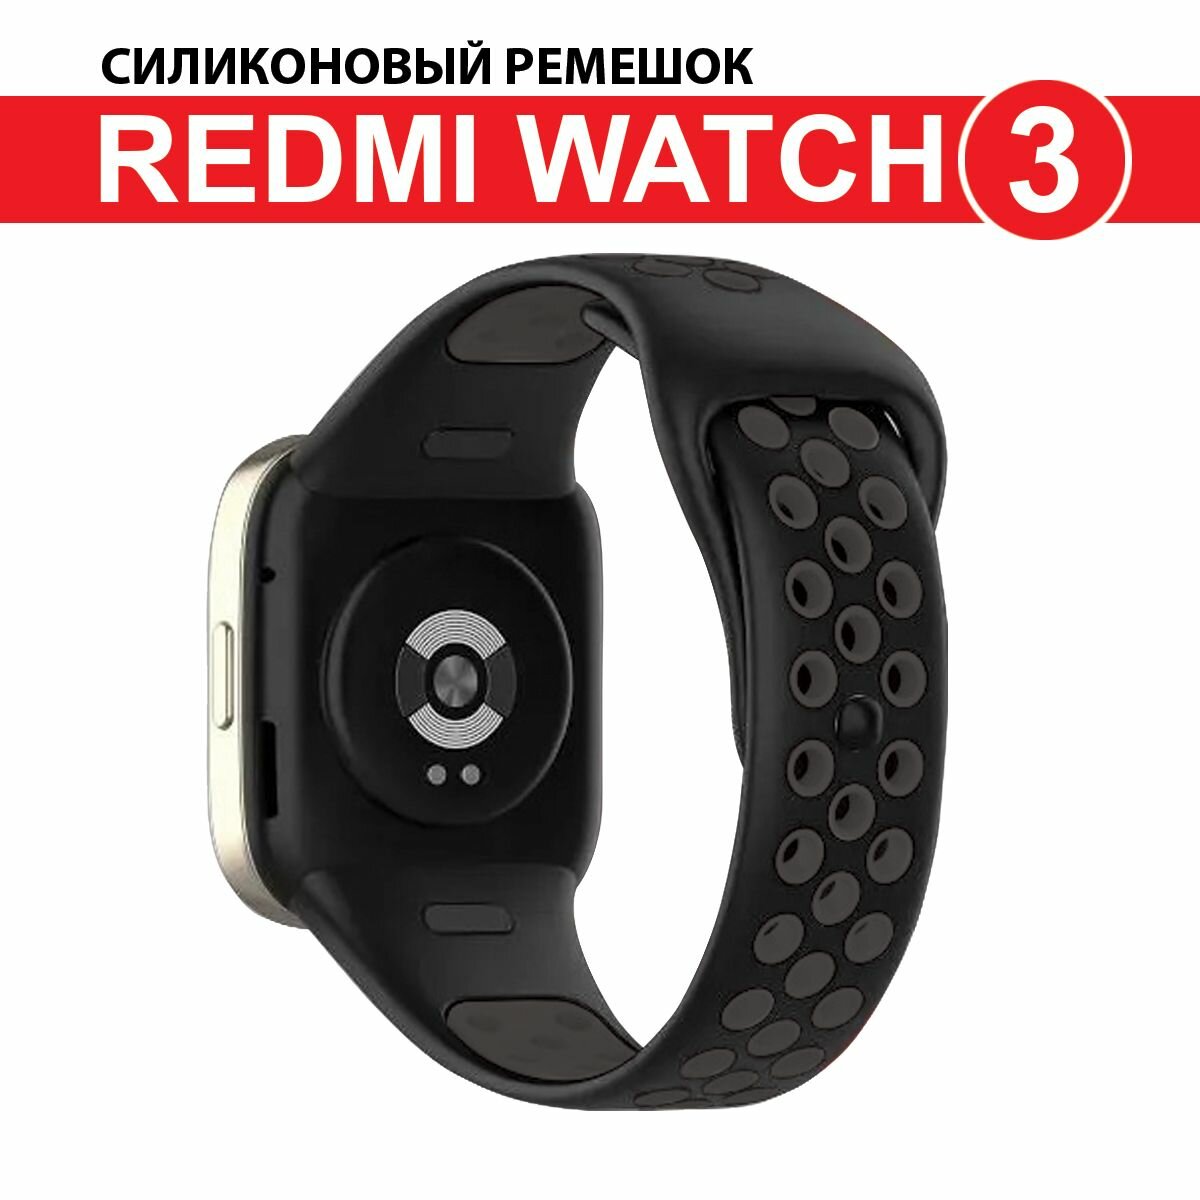 Ремешок силиконовый с перфорацией для Redmi Watch 3, черный/темно-серый